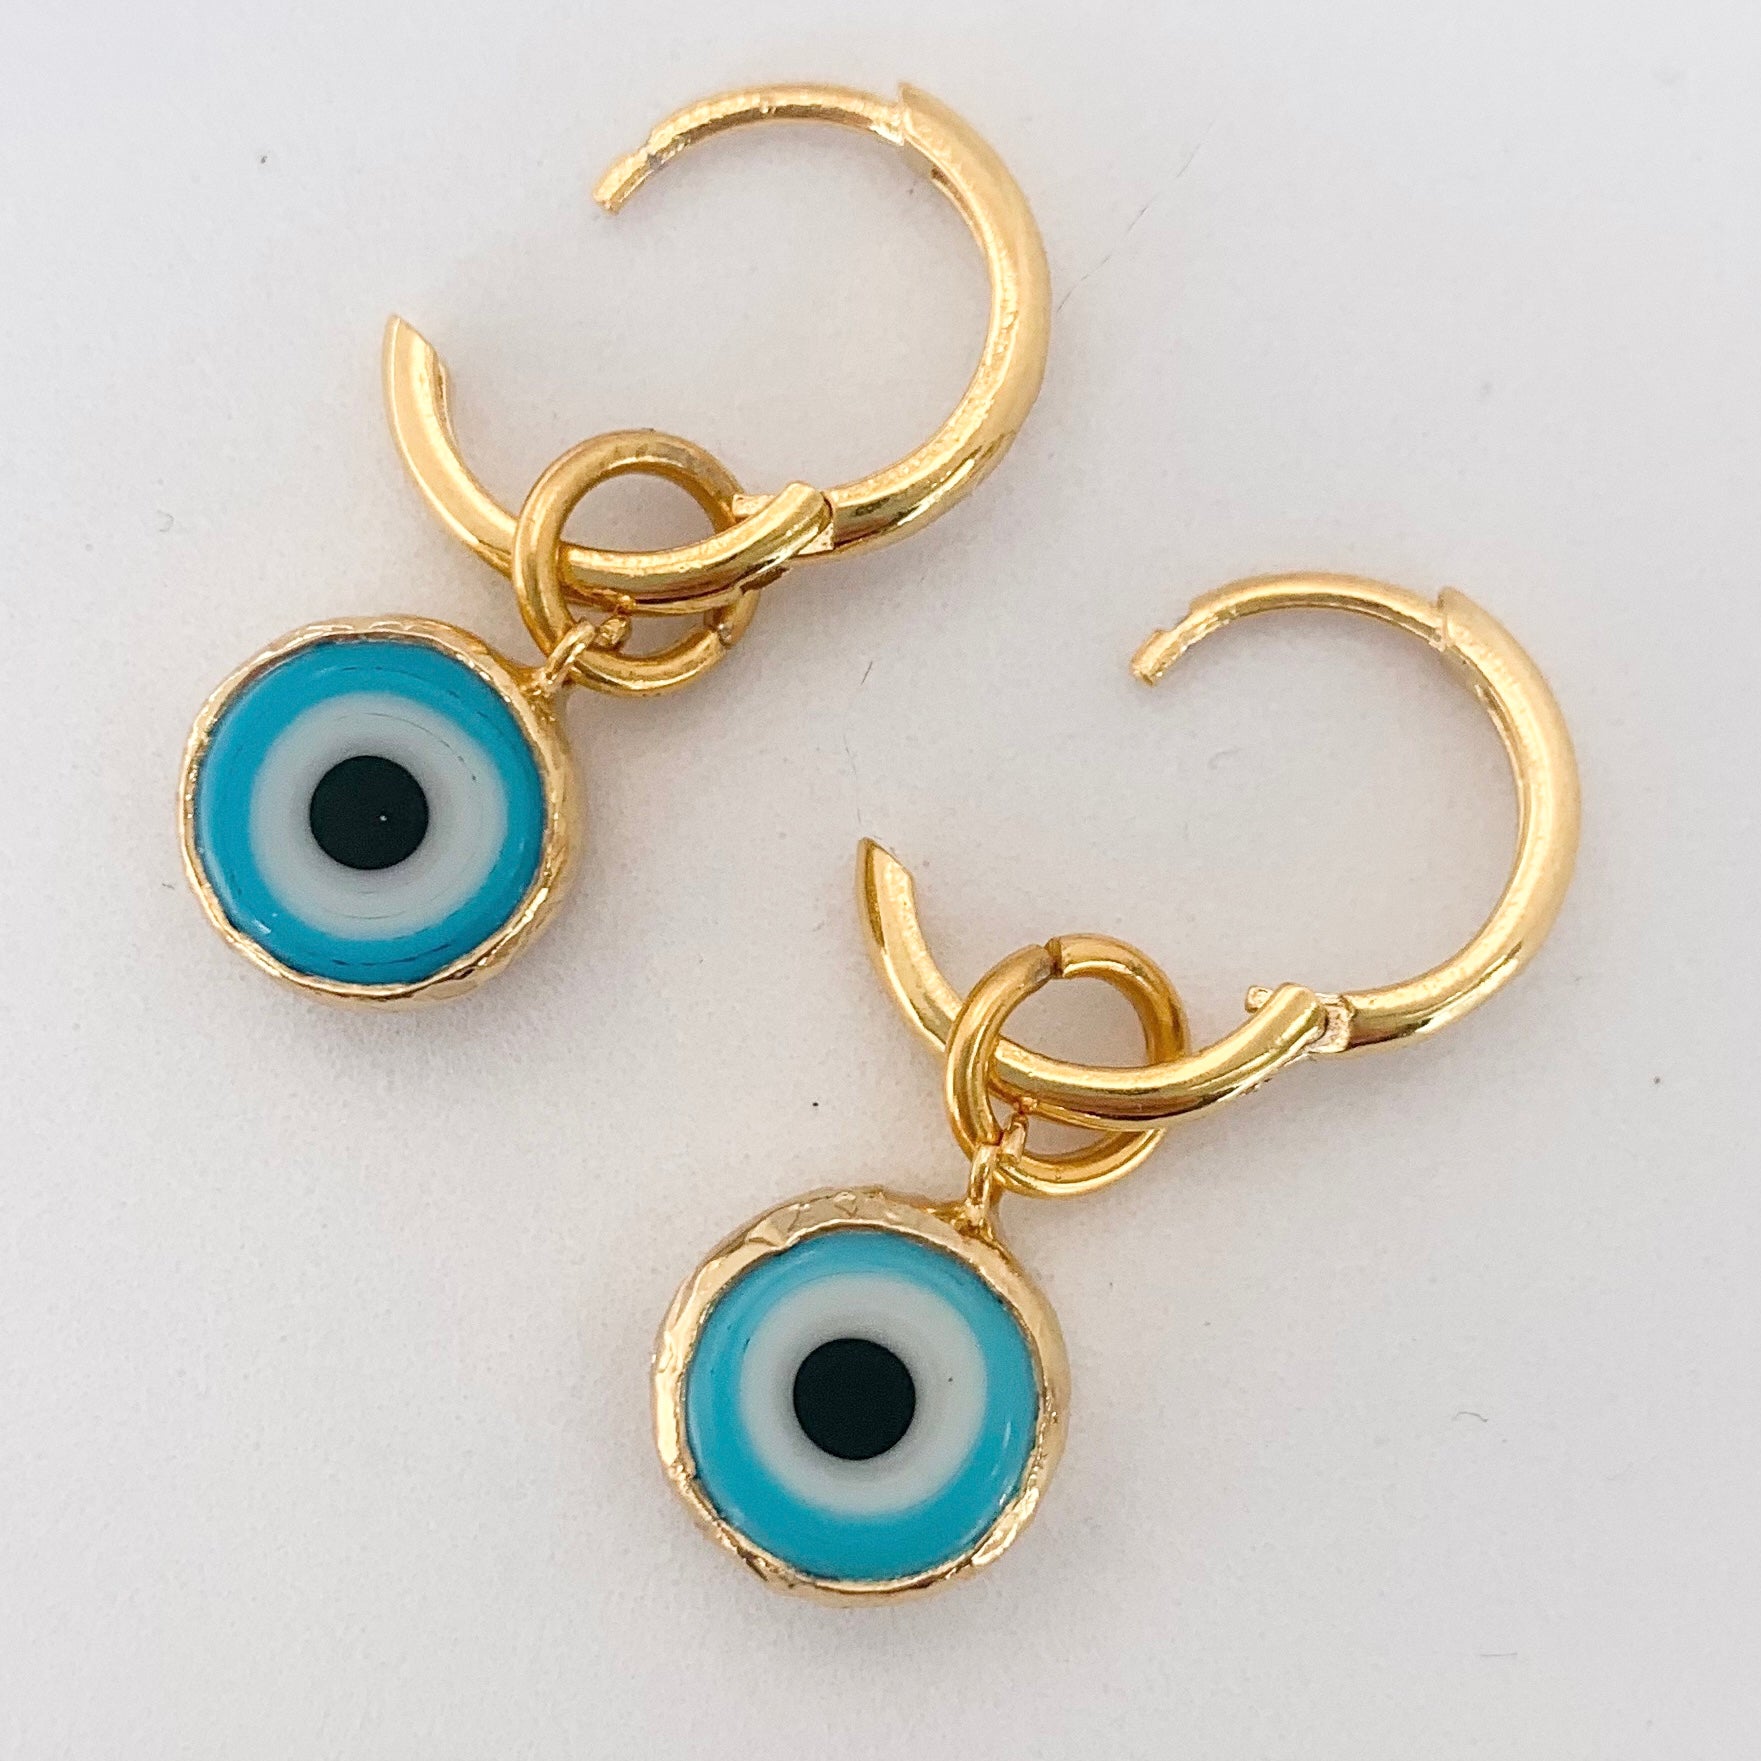 Evil Eye Earrings - 925 Sterling Silver with Zircon - George Art Jewels